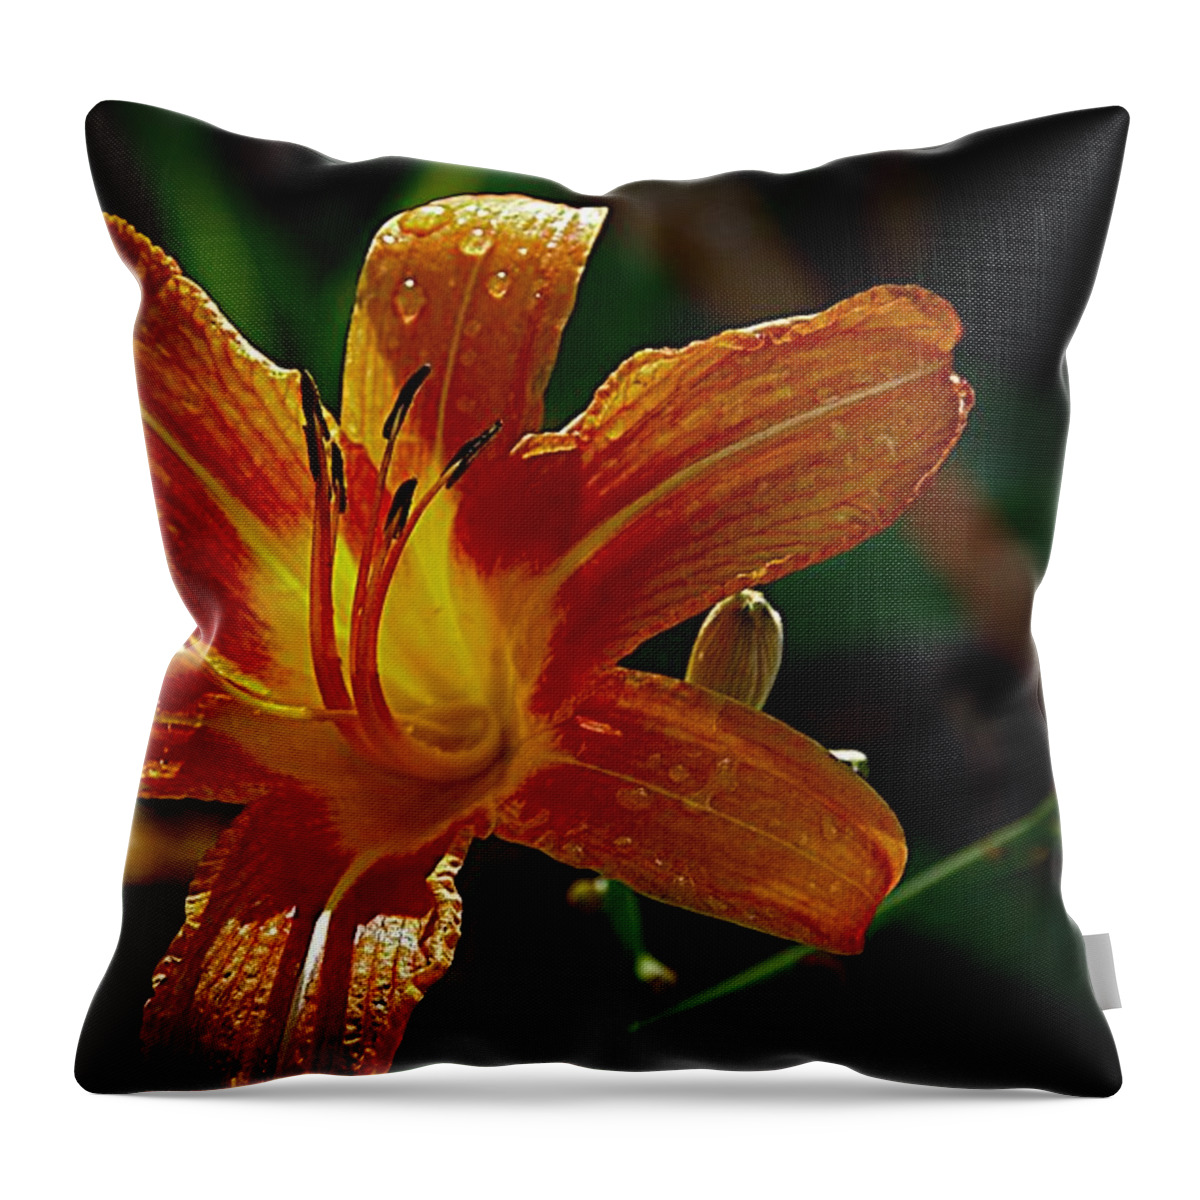 Dark Orange Lily Throw Pillow featuring the photograph Light in the Dark by Karen McKenzie McAdoo